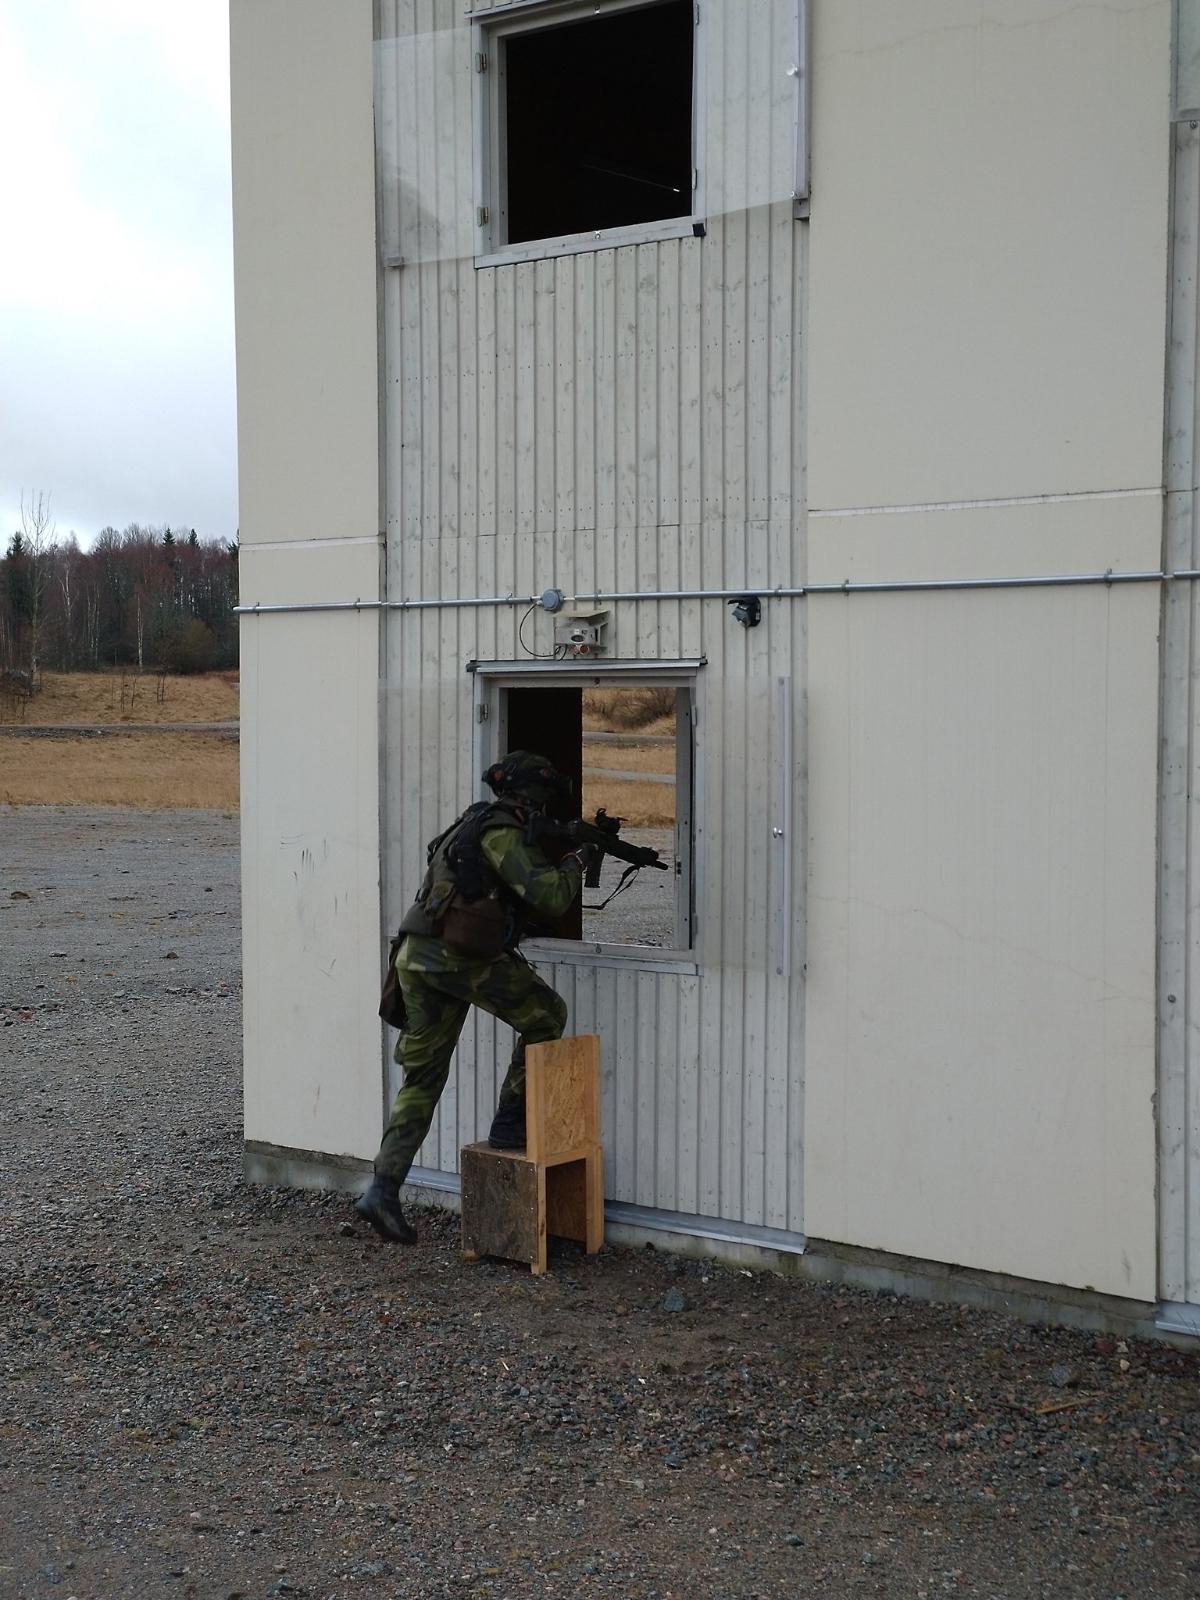 Kuvassa ruotsalainen kadetti tähtää aseella seisoma-asennossa seinän vieressä.